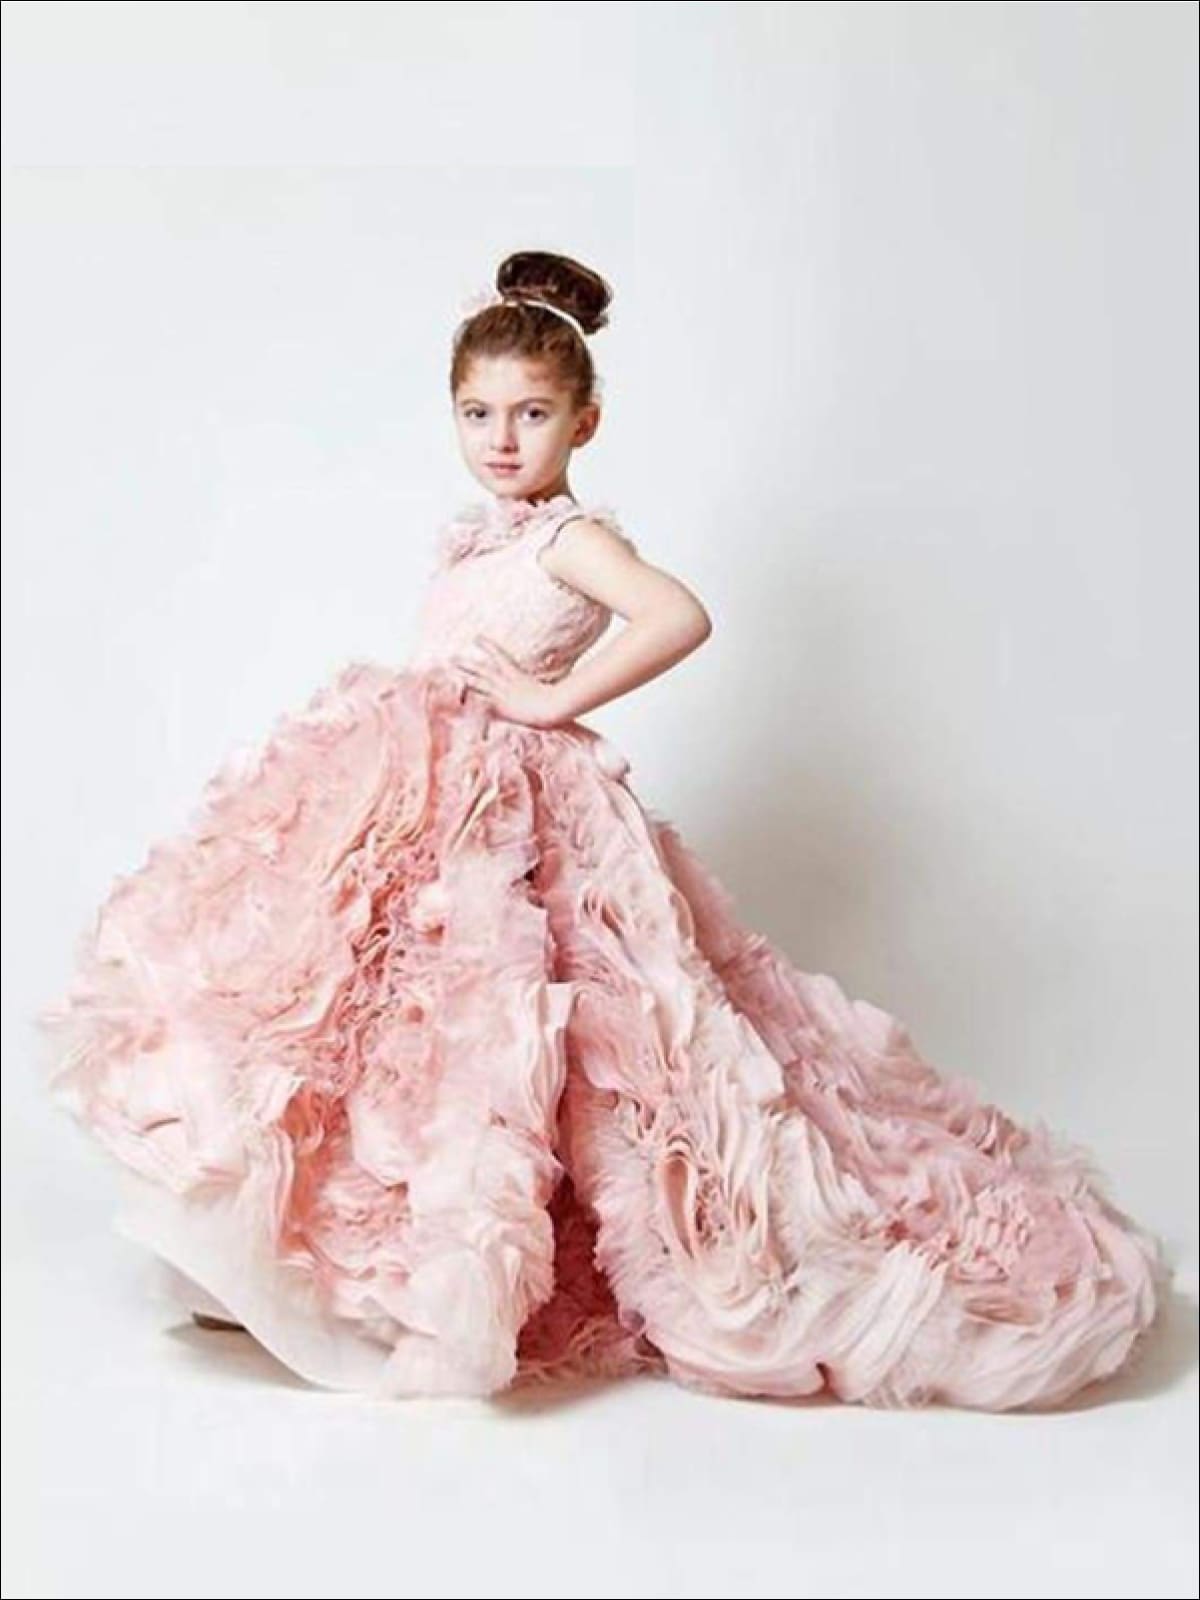 light pink flower girl dresses